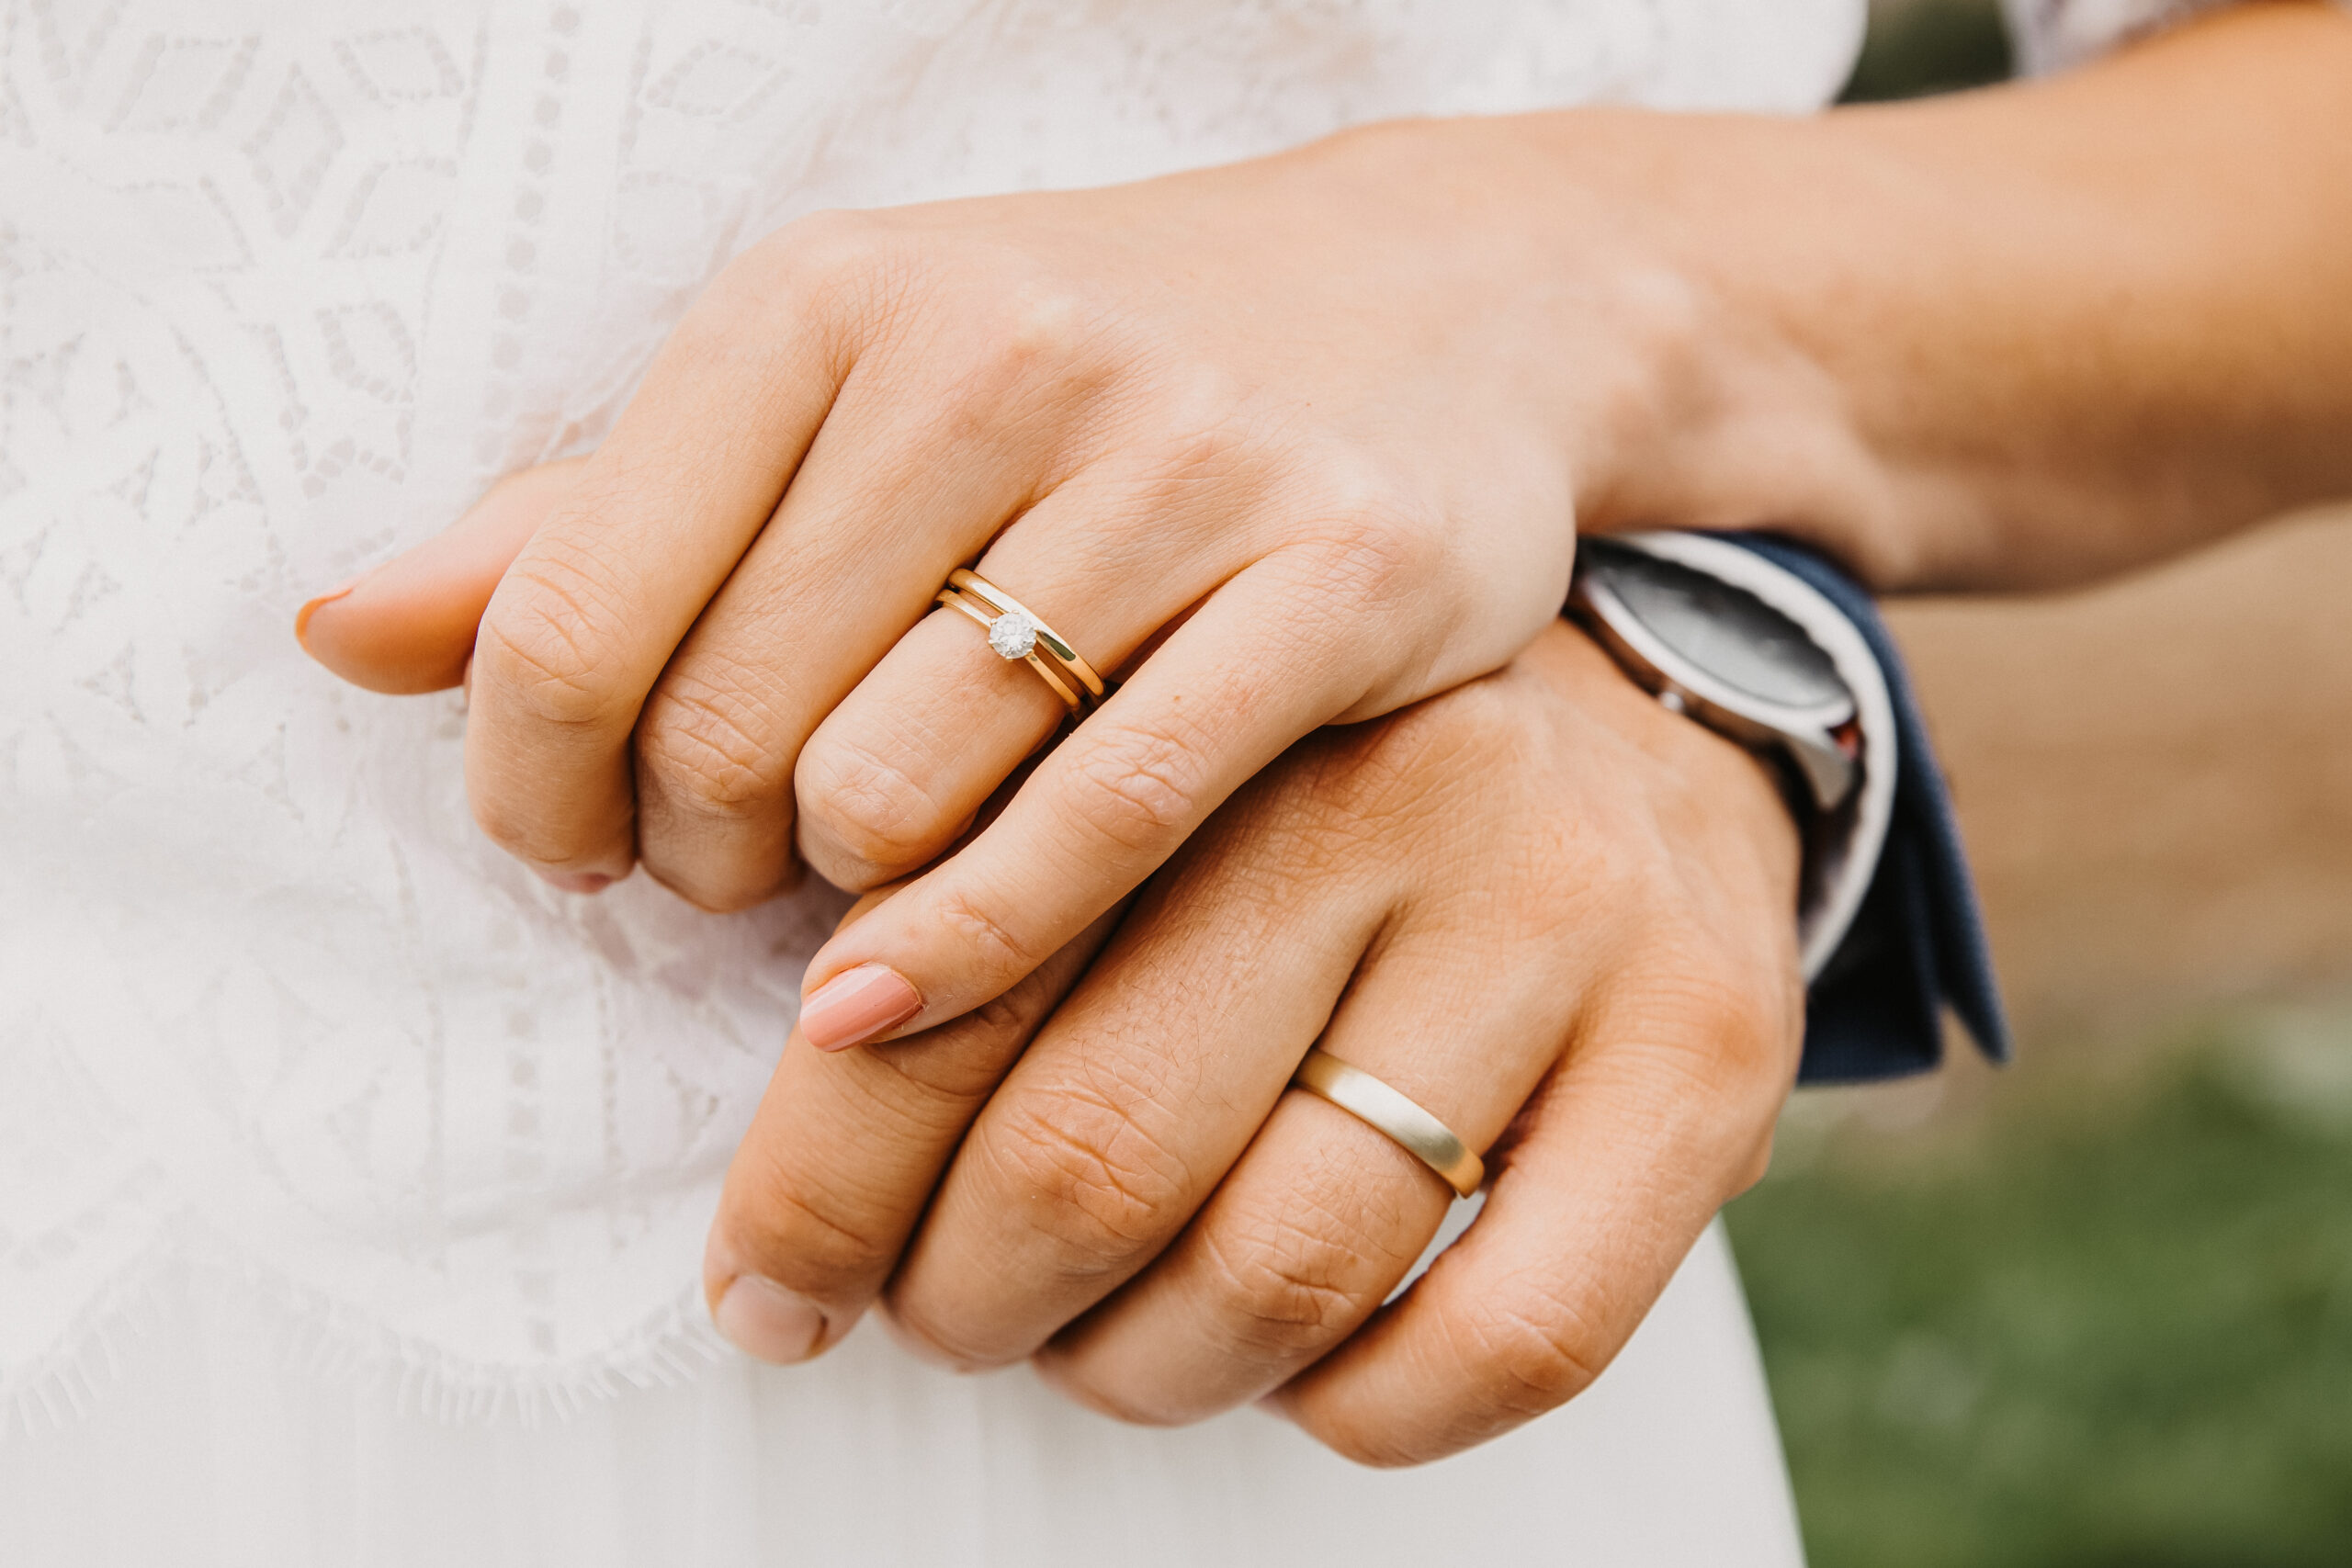 Detailaufnahme der Hände des Brautpaares mit den Eheringen und die schön gemachten Nägel der Braut sind auch zu sehen.